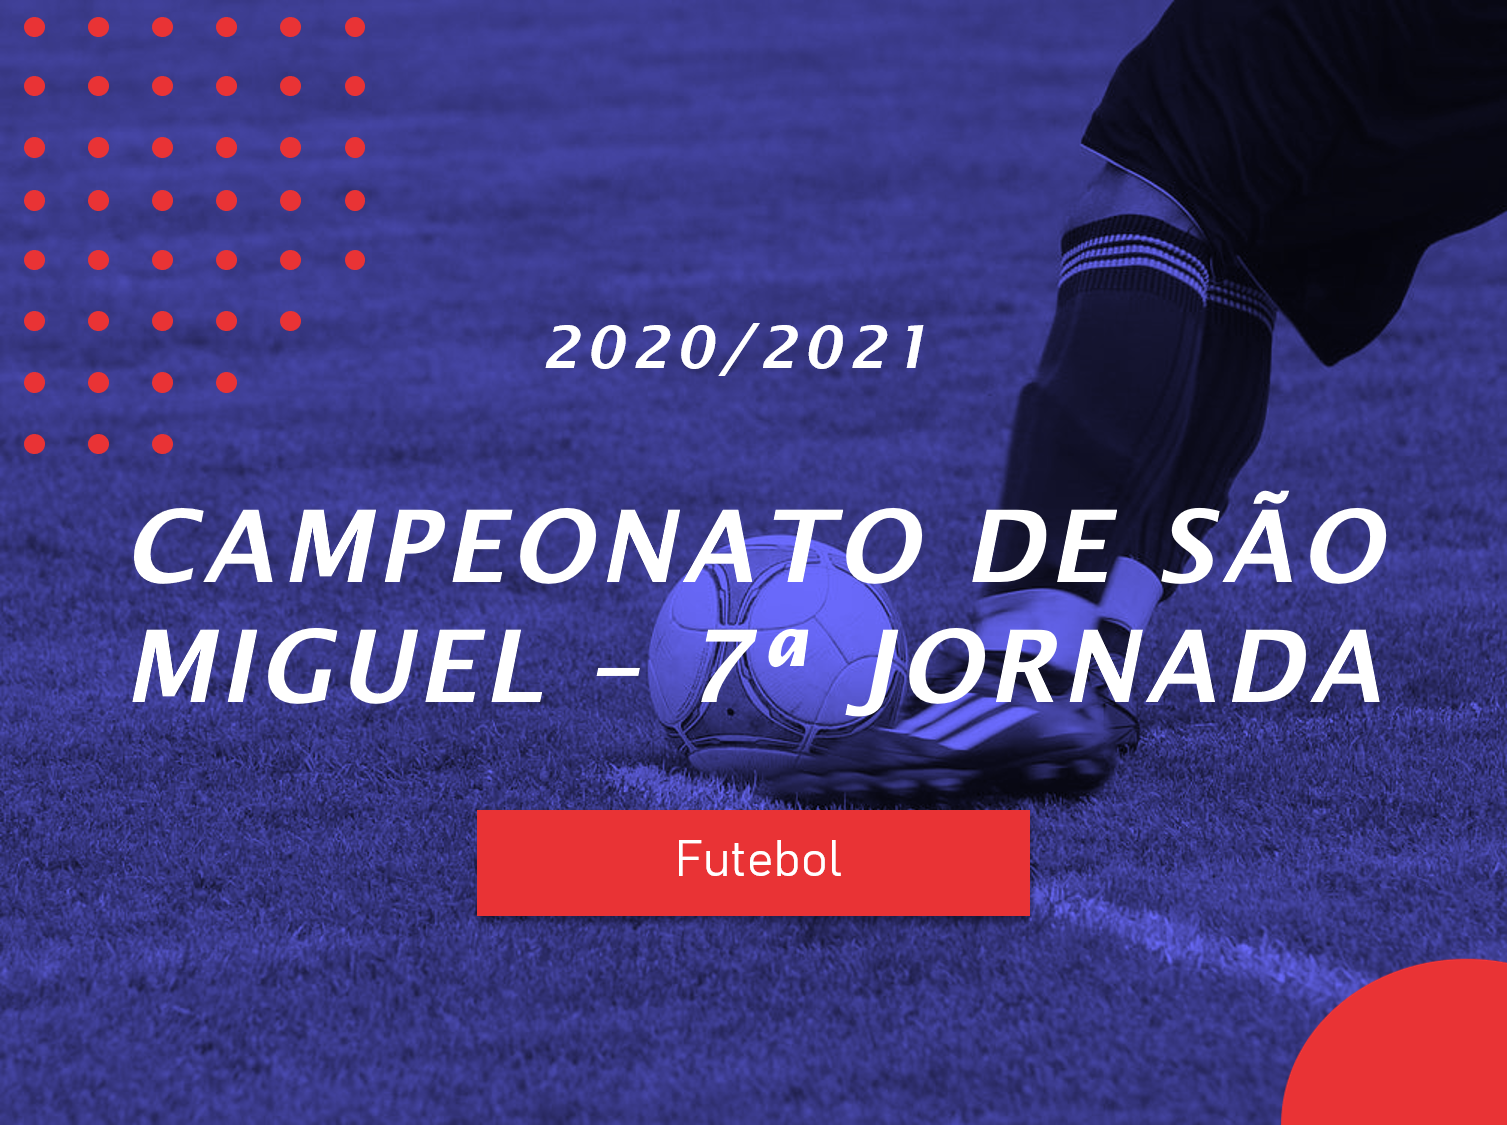 Campeonato de São Miguel - 7ª Jornada - Antevisão